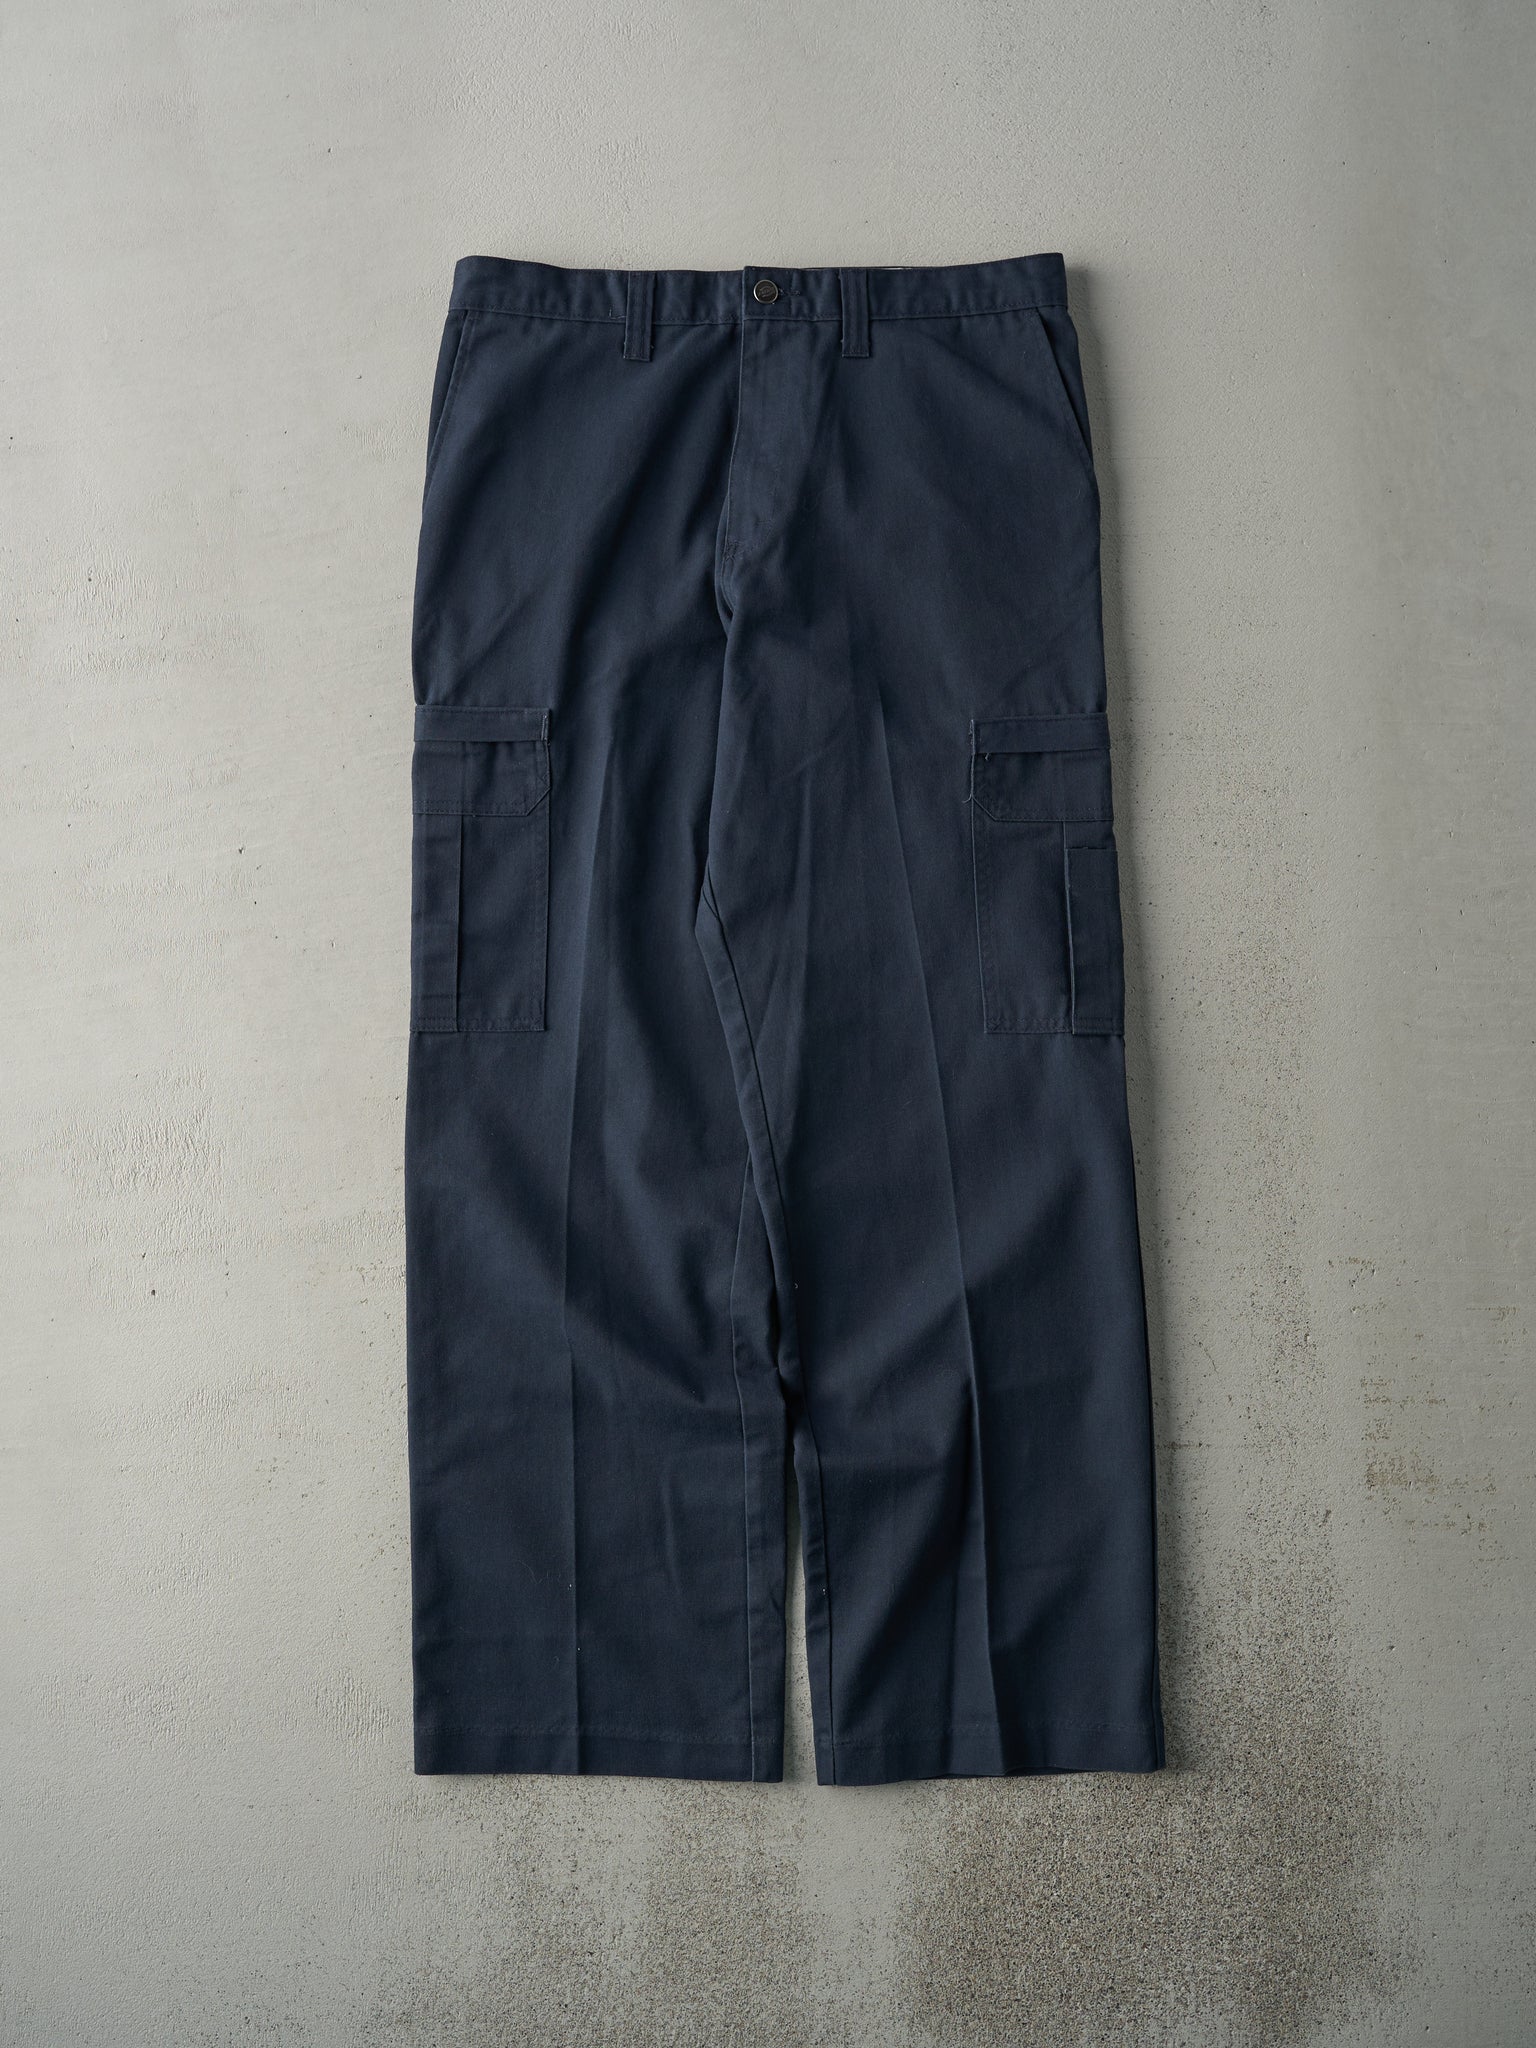 Vintage Y2K Navy Blue Dickies Cargo Work Pants (34x31.5)